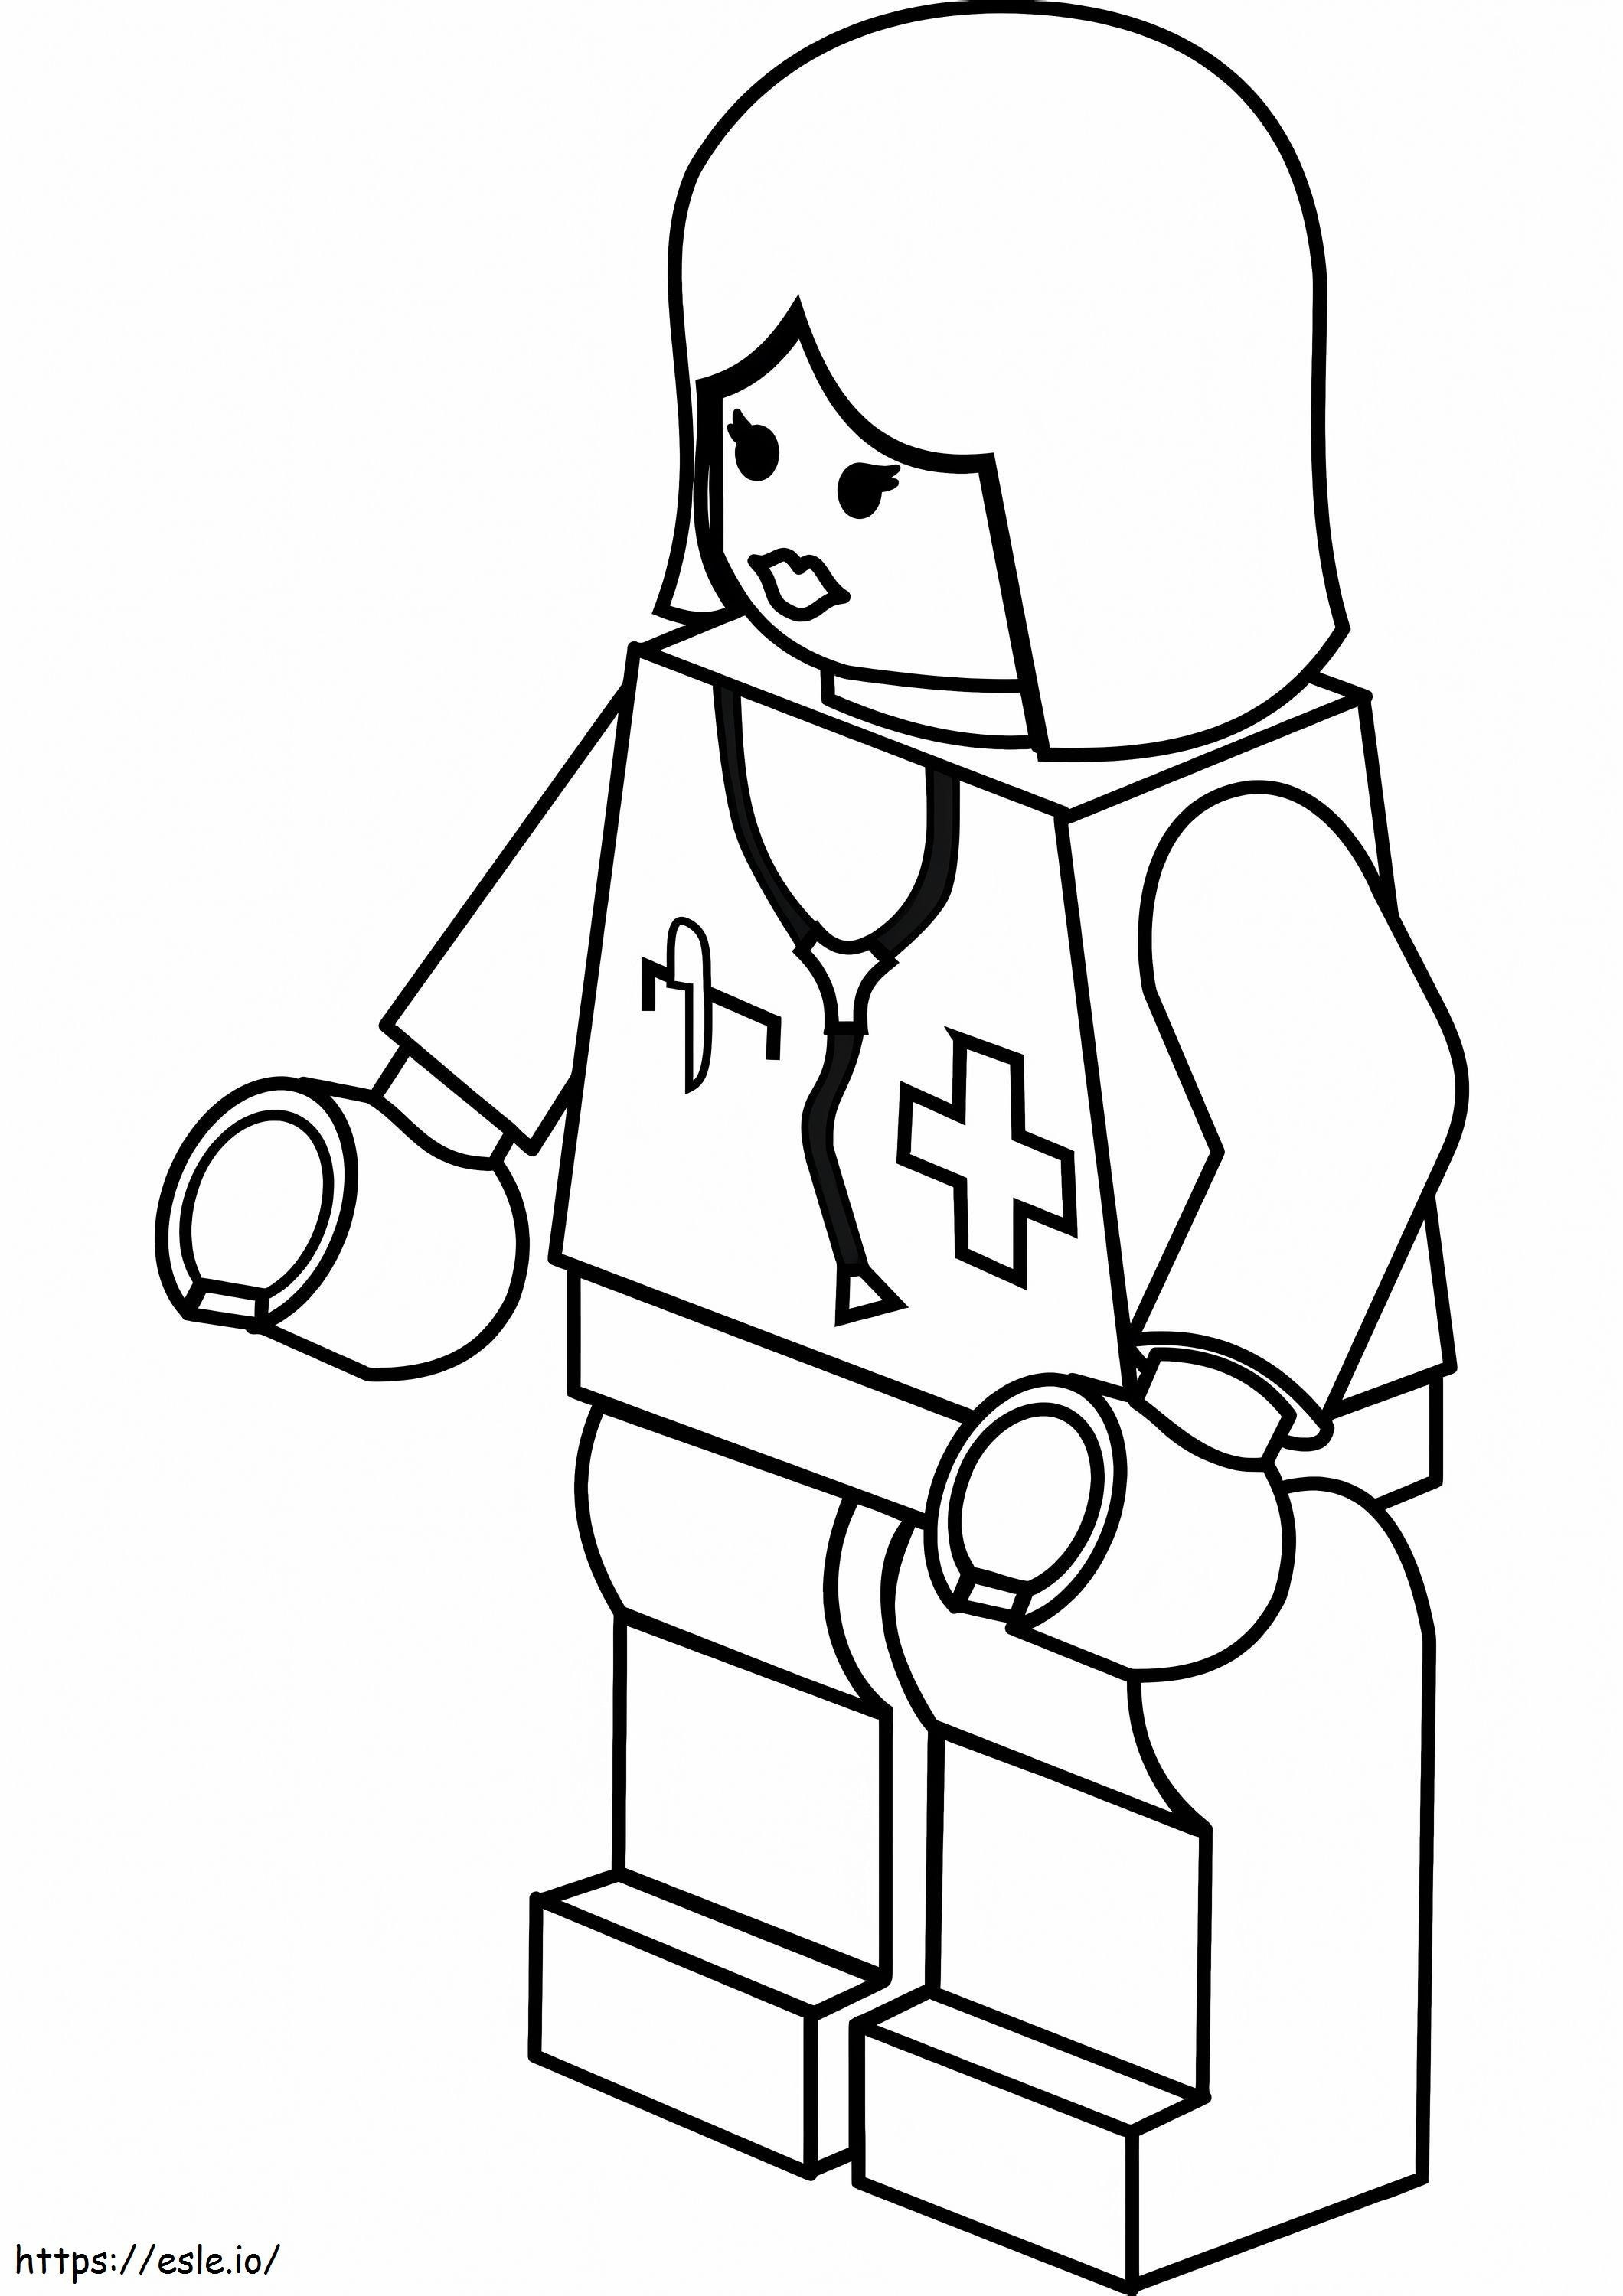 Lego pielęgniarka kolorowanka